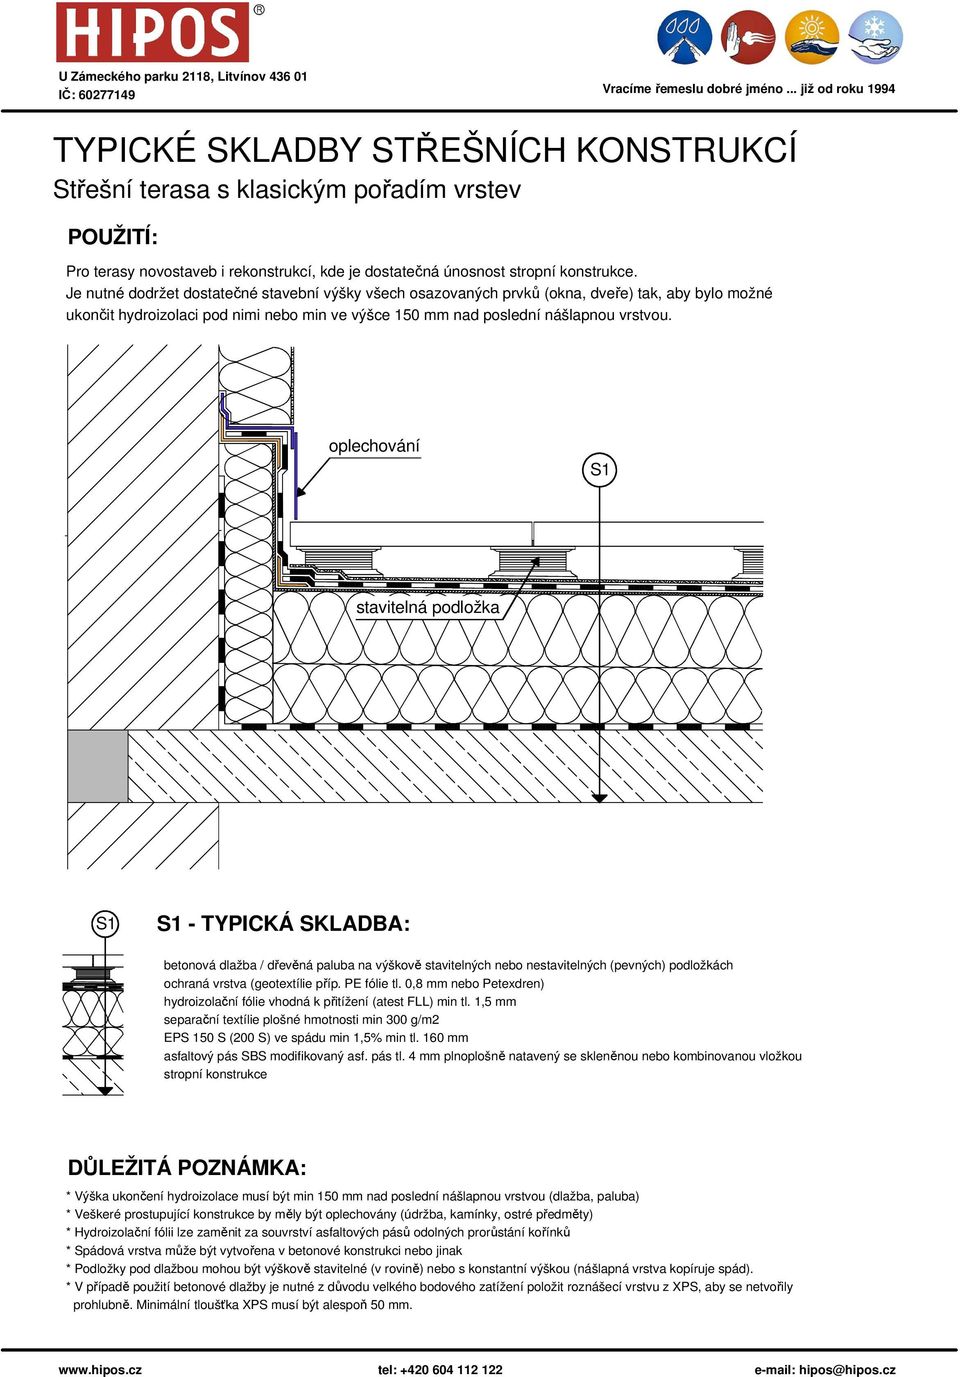 oplechování stavitelná podložka - TYPICKÁ SKLADBA: betonová dlažba / dřevěná paluba na výškově stavitelných nebo nestavitelných (pevných) podložkách ochraná vrstva (geotextílie příp. PE fólie tl.